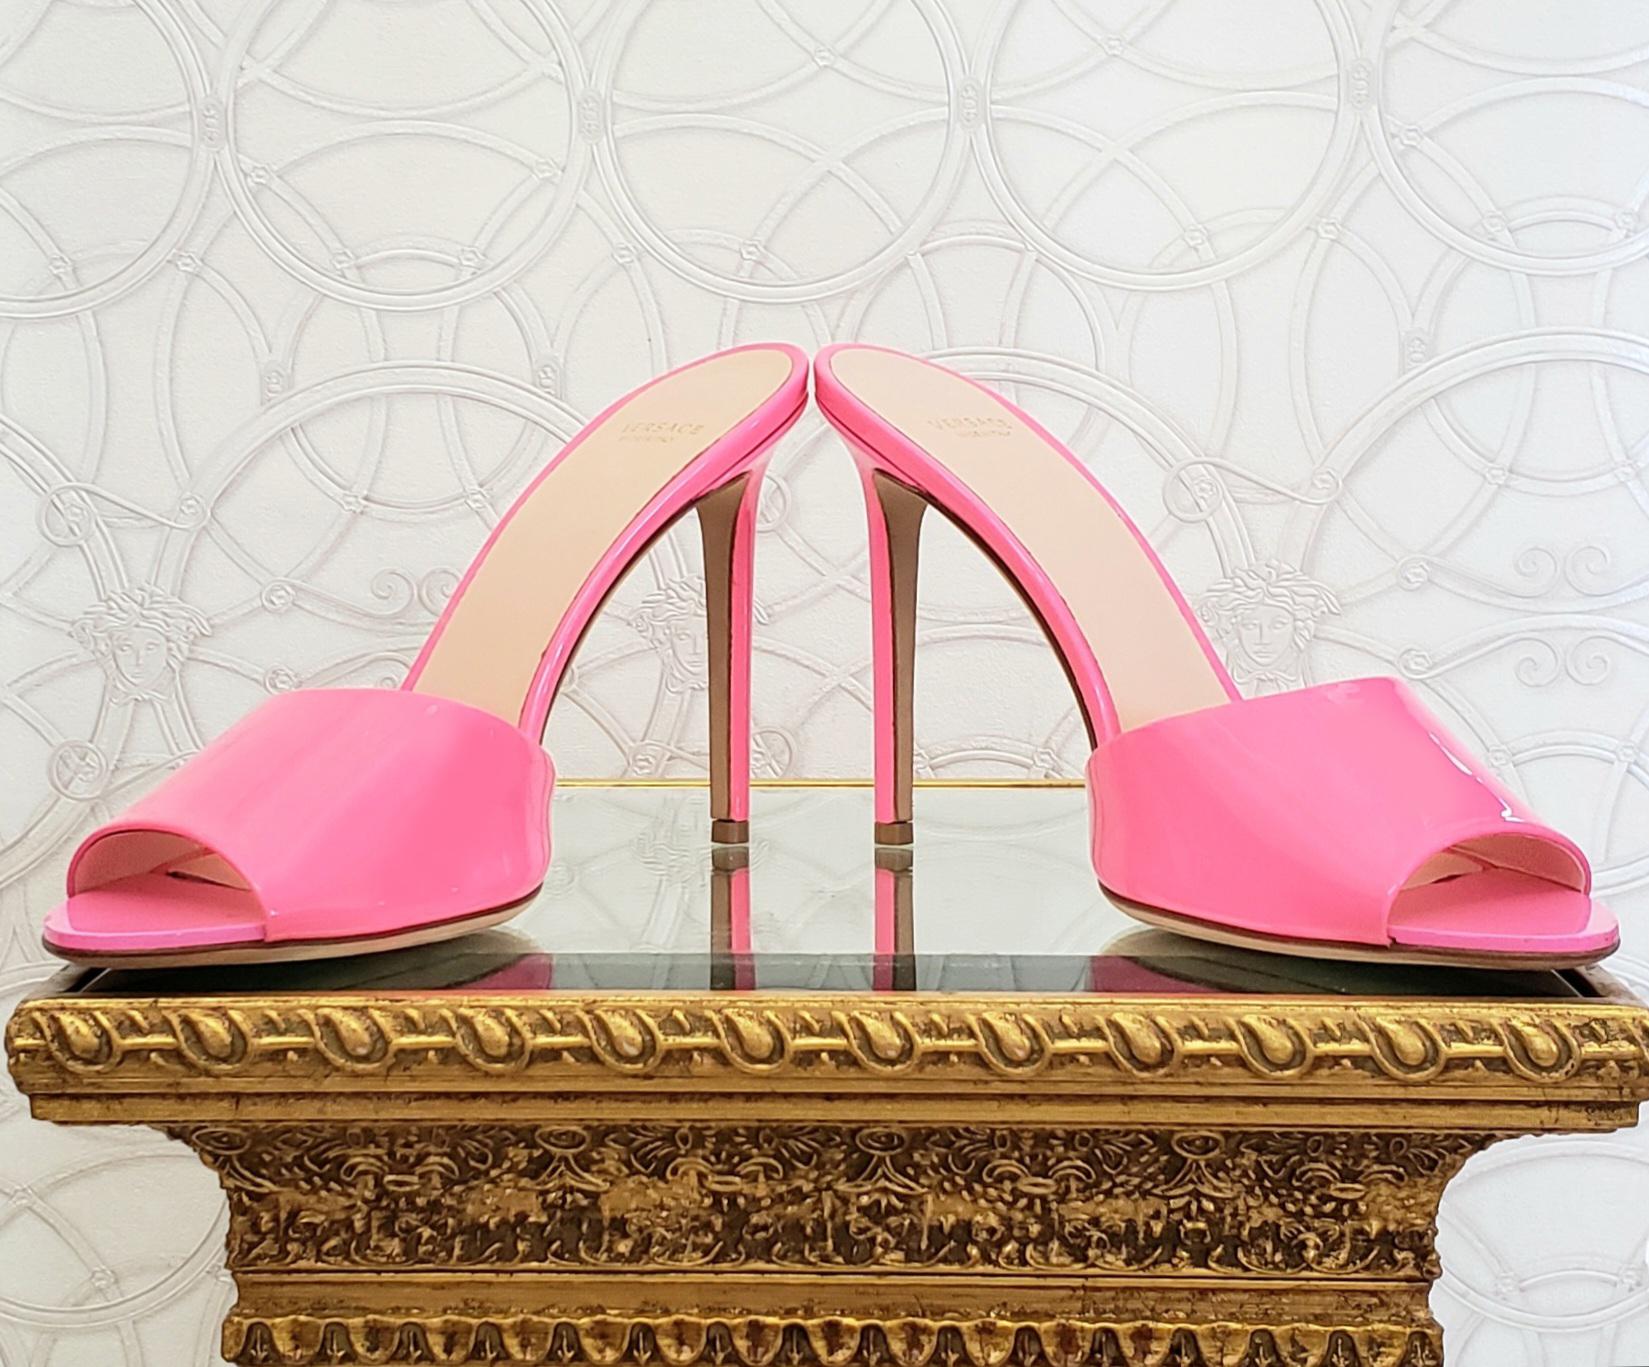 versace pink heels